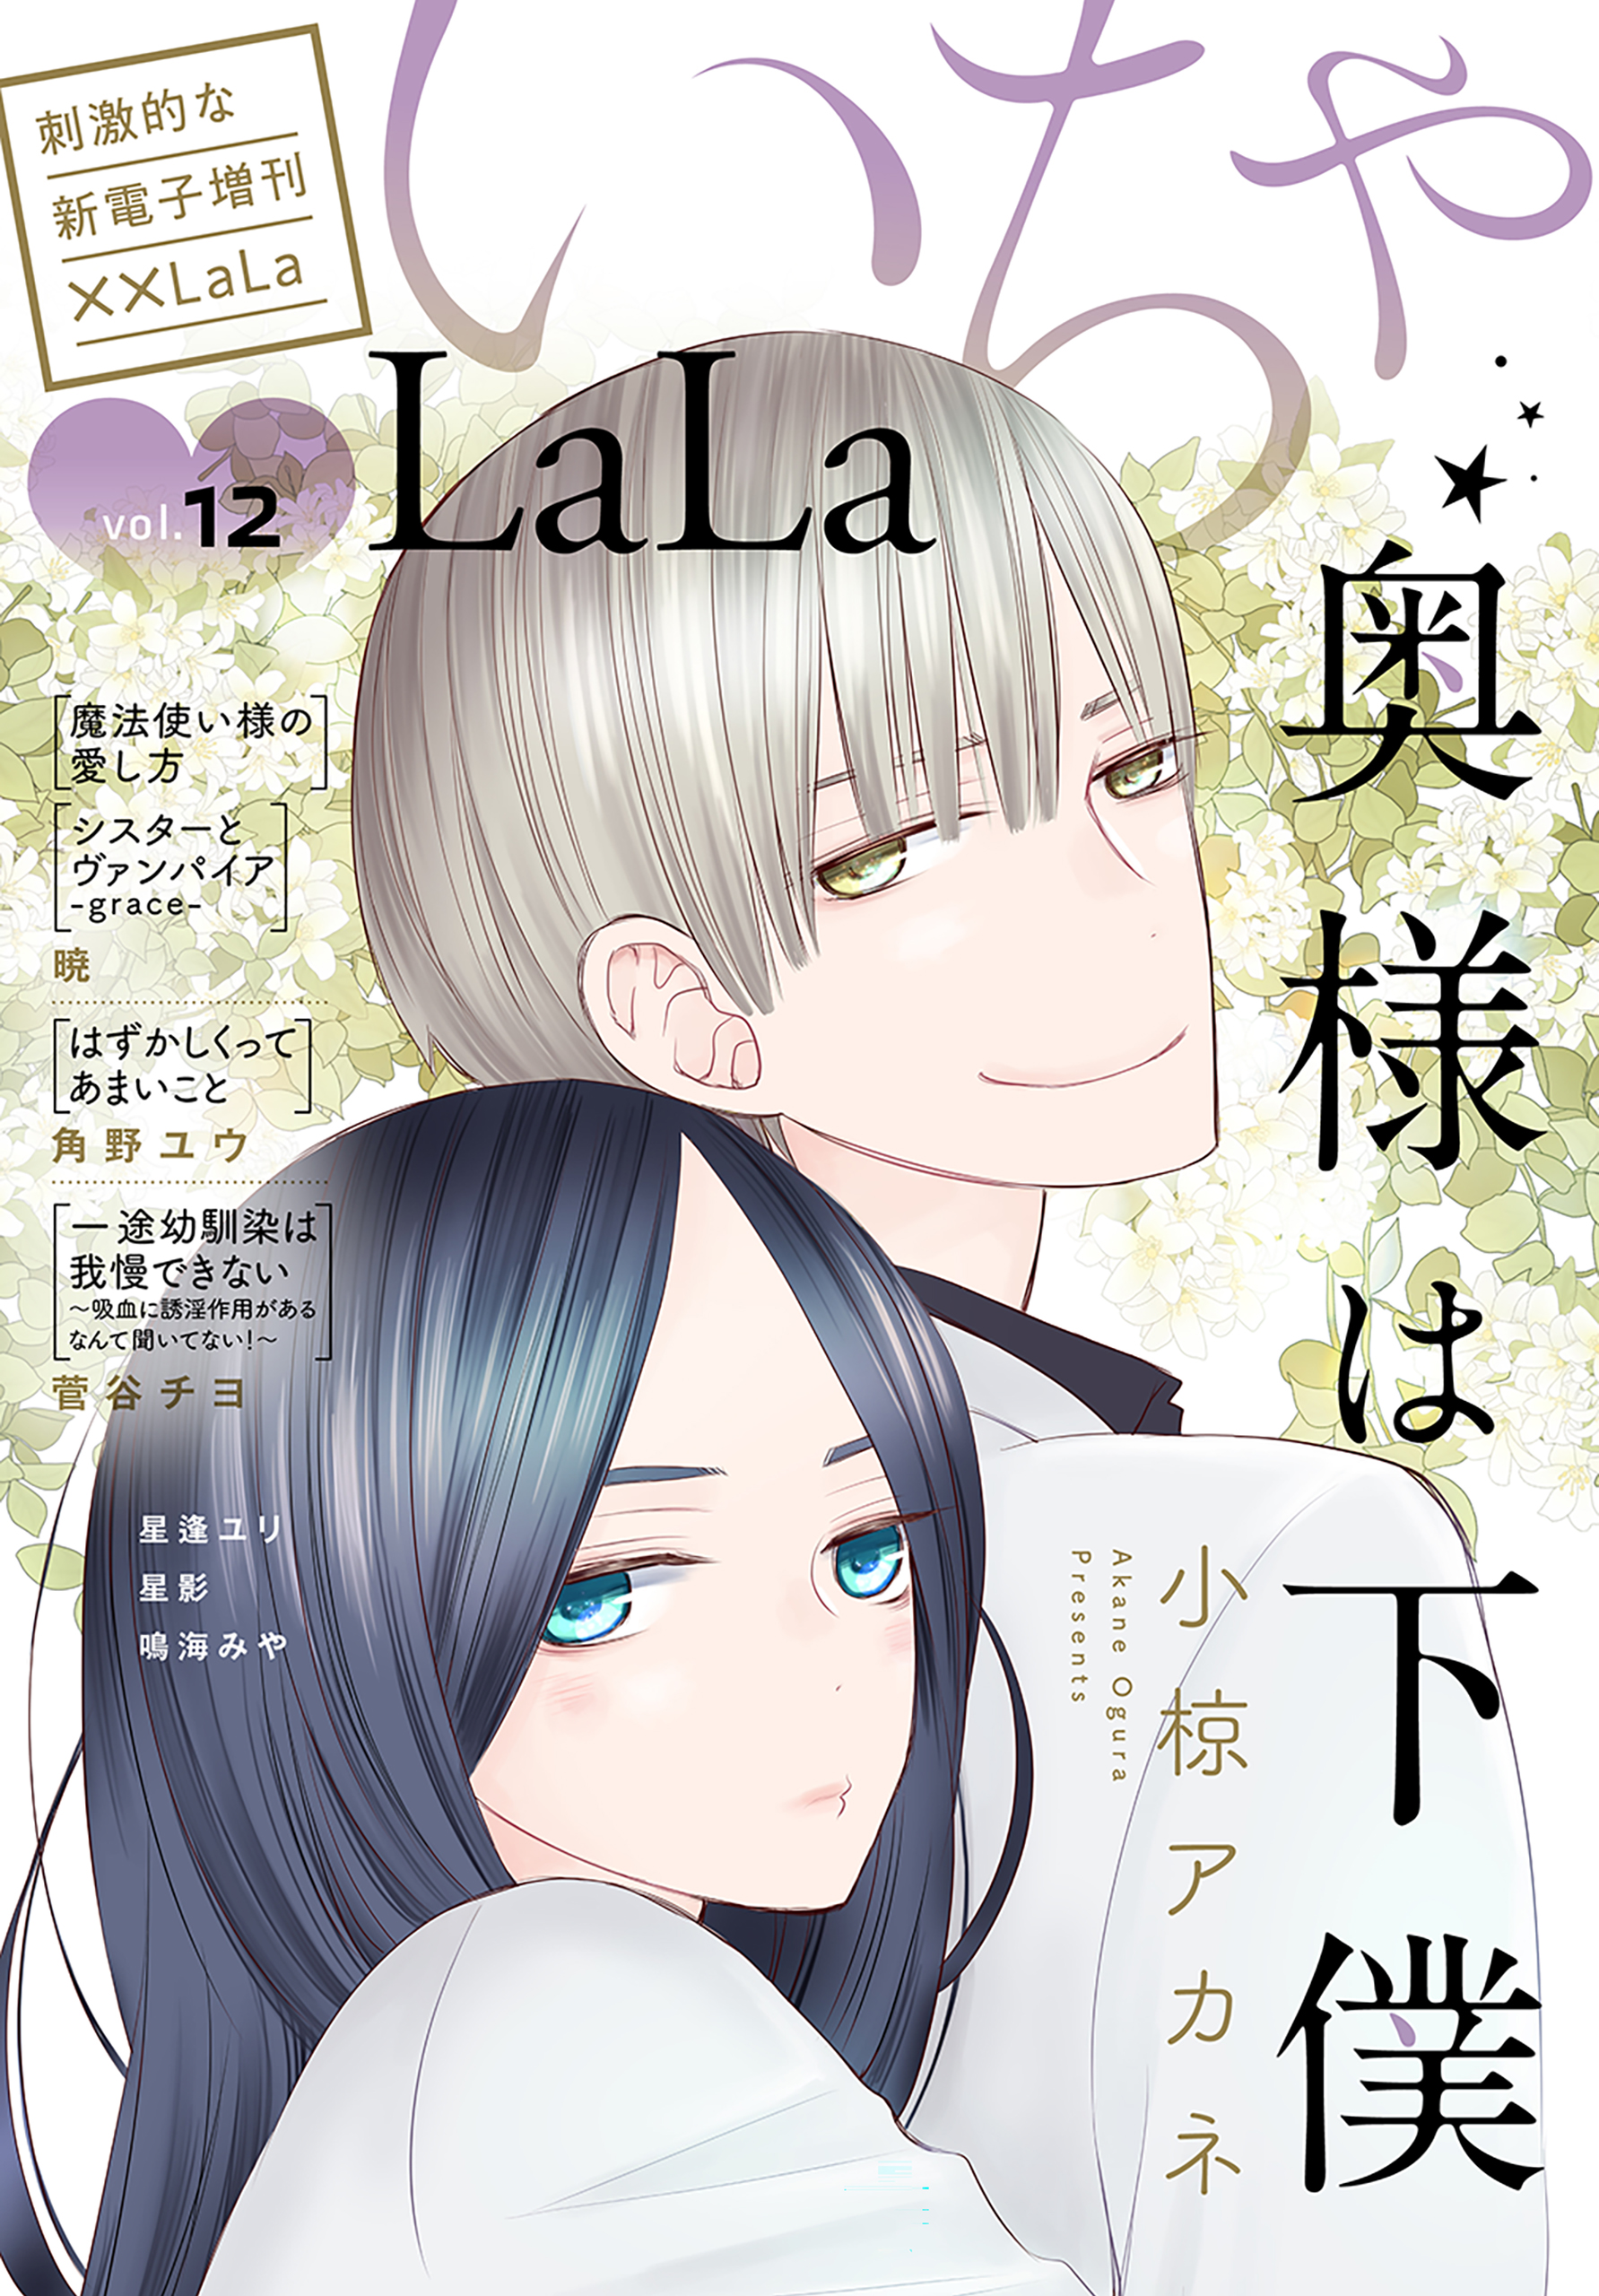 LaLa いちゃLaLa Vol.12(マンガ) - 電子書籍 | U-NEXT 初回600円分無料